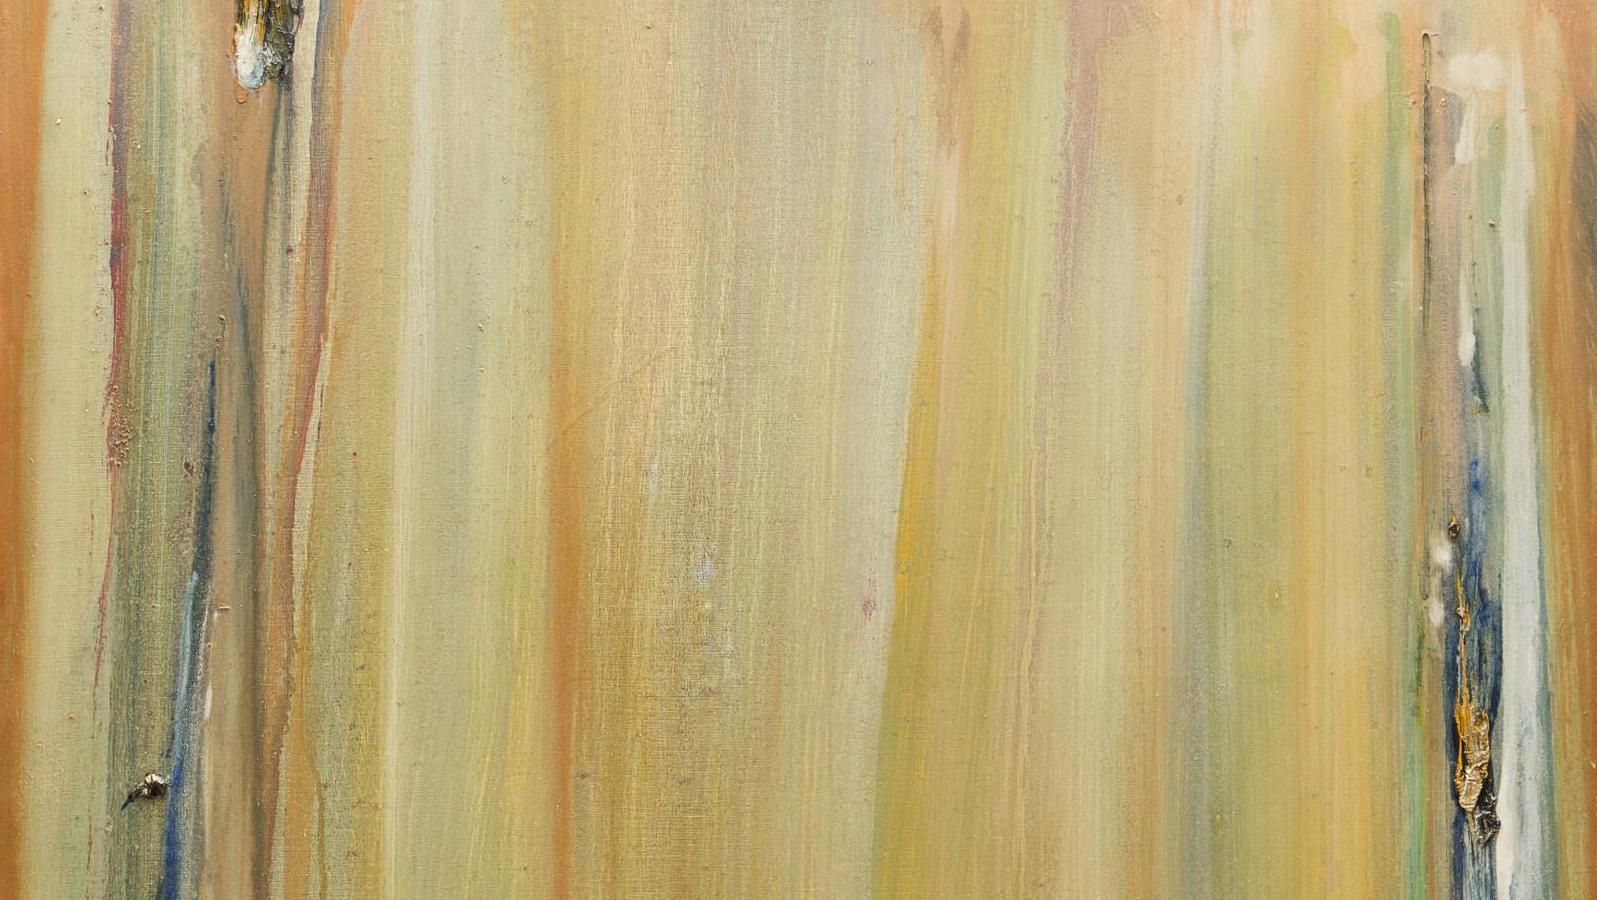 Olivier Debré (1920-1999), Barres ocre jaune d’automne, 1978, huile sur toile, 100 x 100 cm... Collection Harel ou les amitiés artistiques